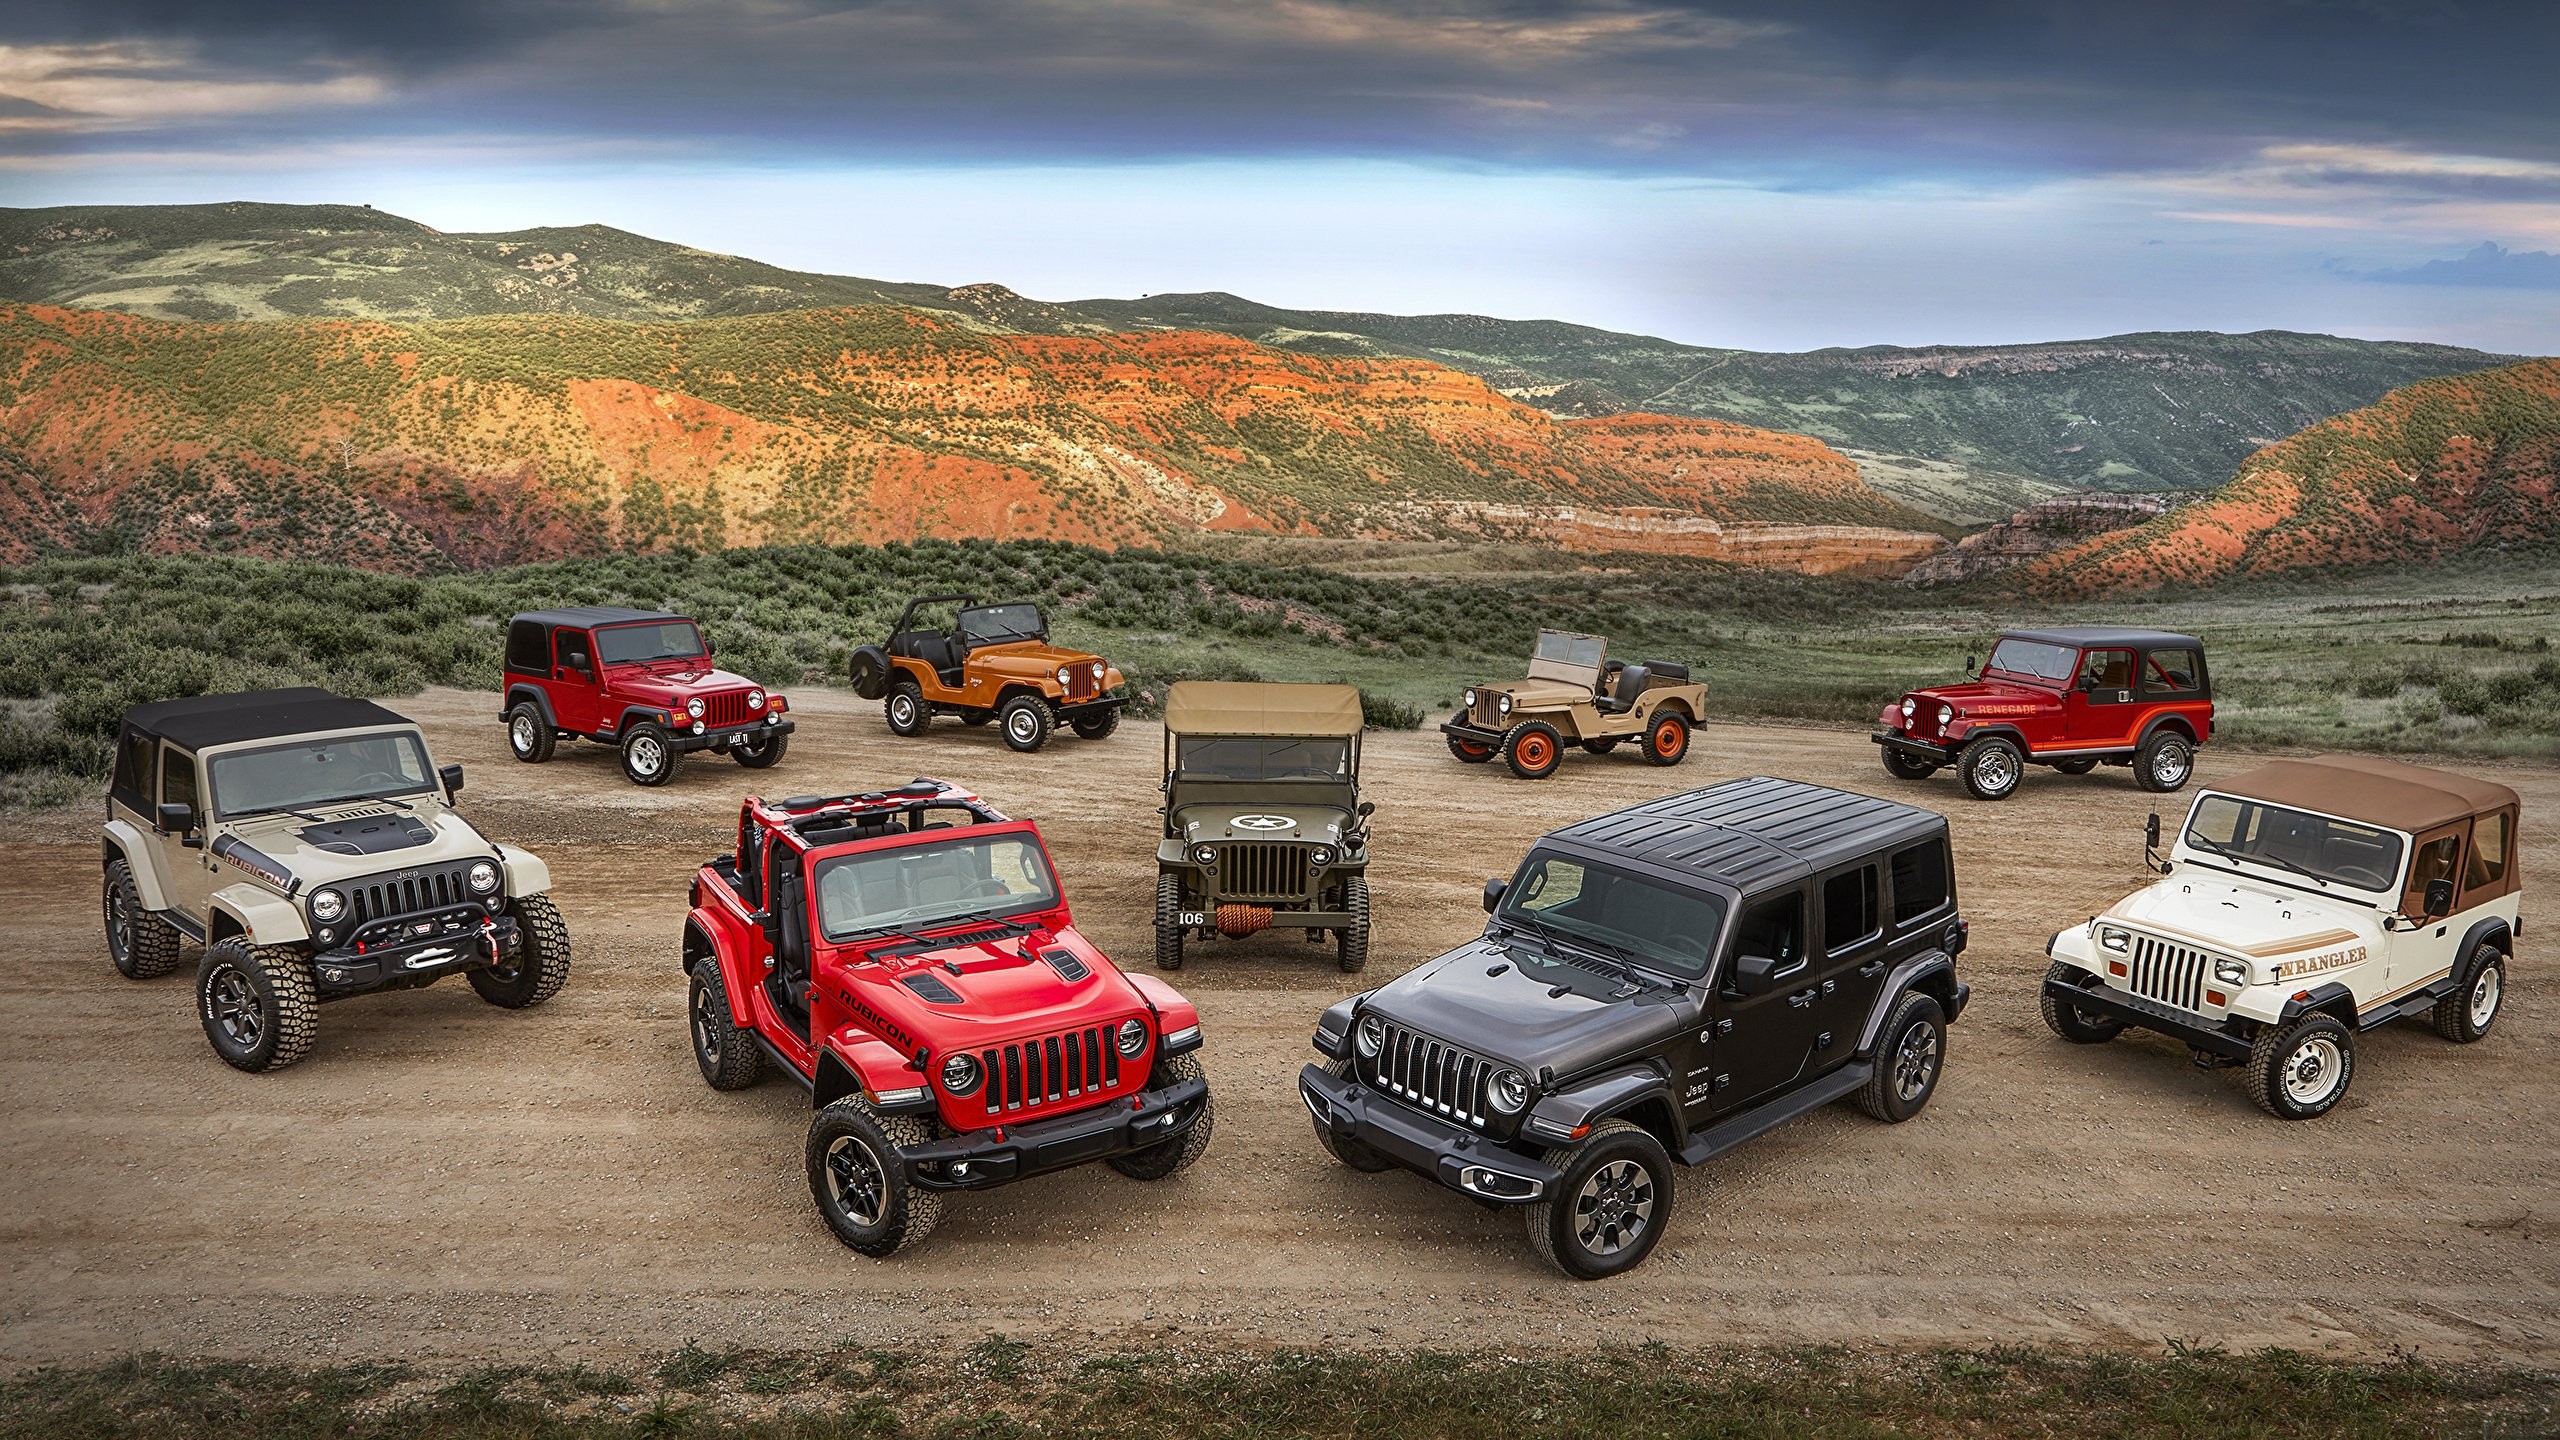 Jeep: Внедорожные возможности и история бренда